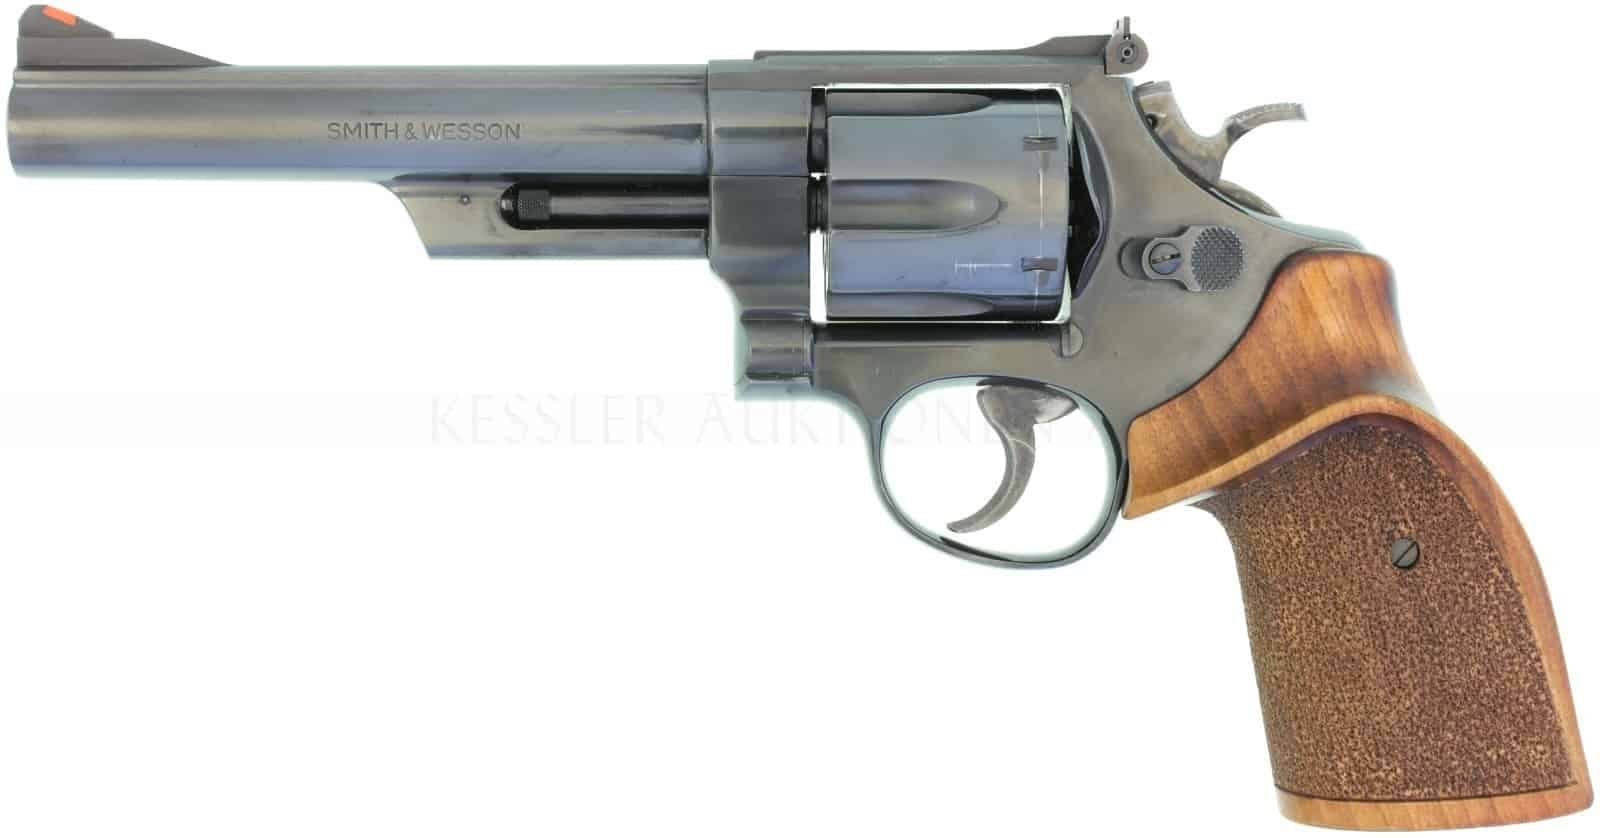 <strong>Revolver</strong>
Amerikanischer Smith&Wesson 29-3 im Kaliber .44 Magnum . Dirty Harrys Lieblingsrevolver. Darf ebenfalls auf den WES genommen werden, unabhängig ob man einen Kleinkaliber-Revolver will oder auf Elefantenjagd geht.